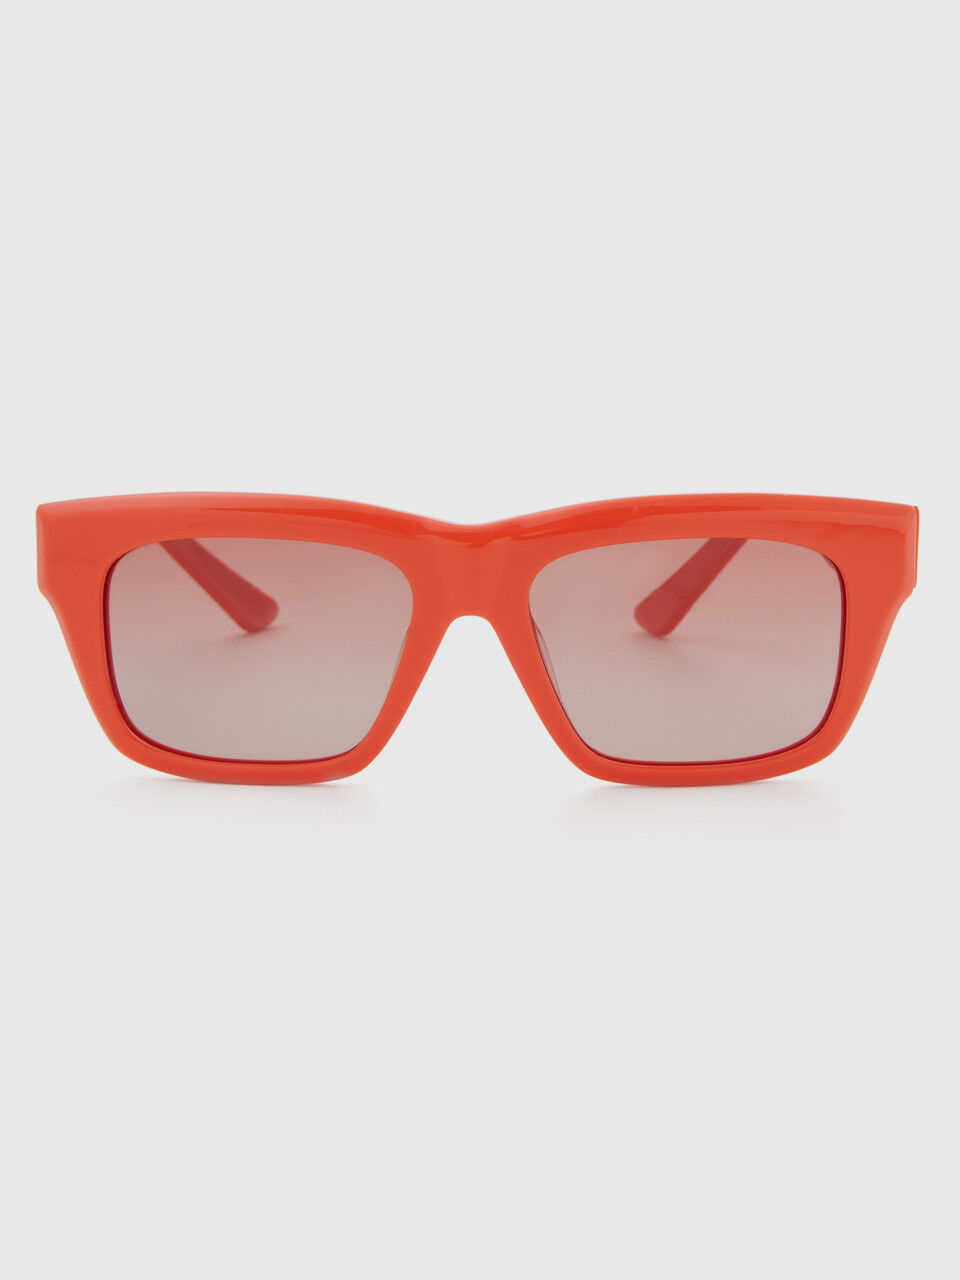 Rechteckige orangefarbene Sonnenbrille